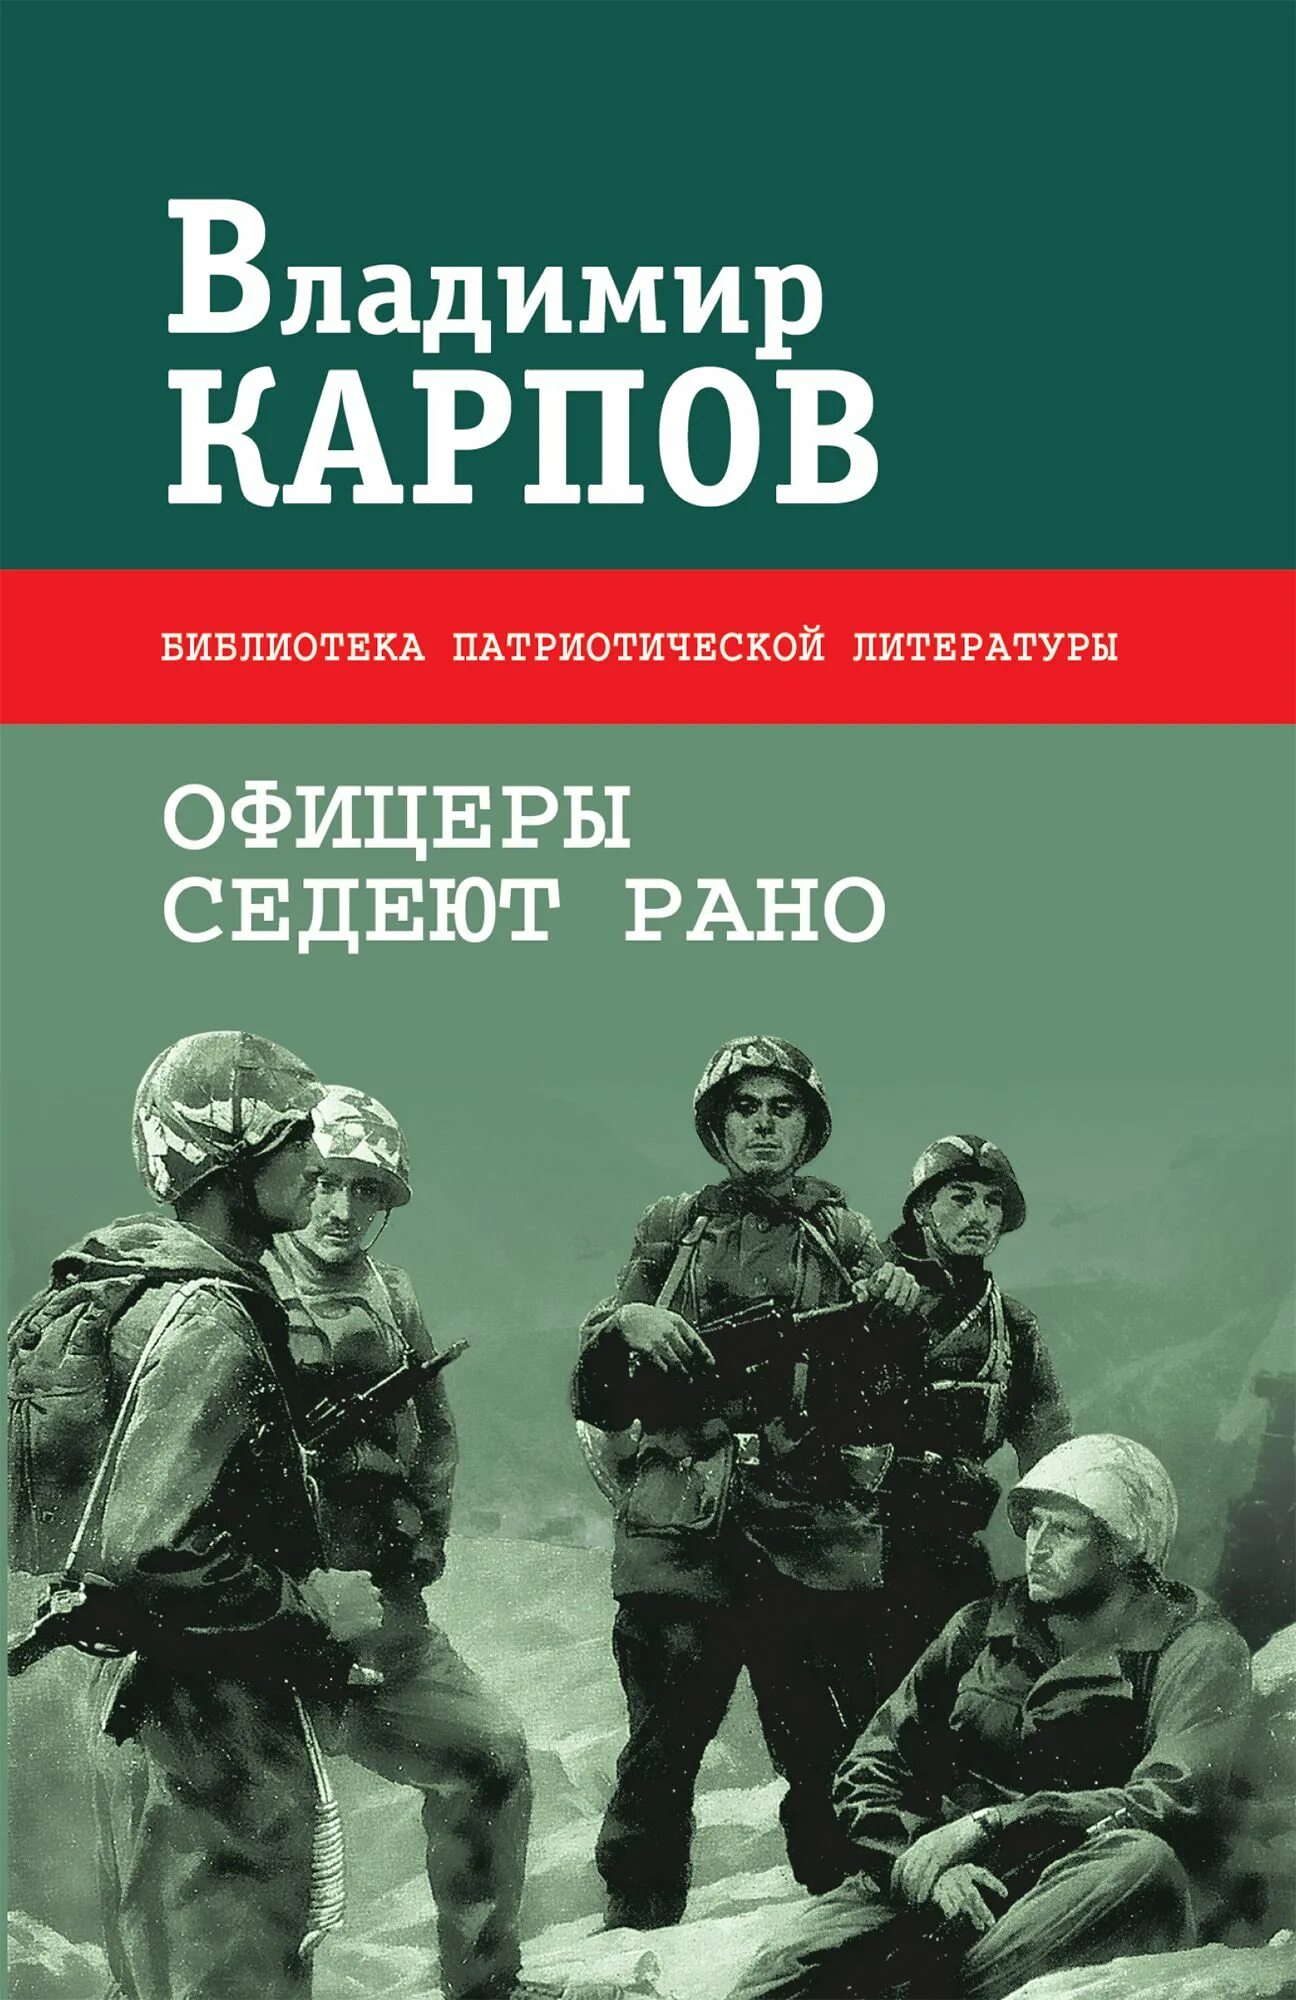 Книги о войне. Книги Владимира Карпова. Военные книги с авторами. Взять живым аудиокнига